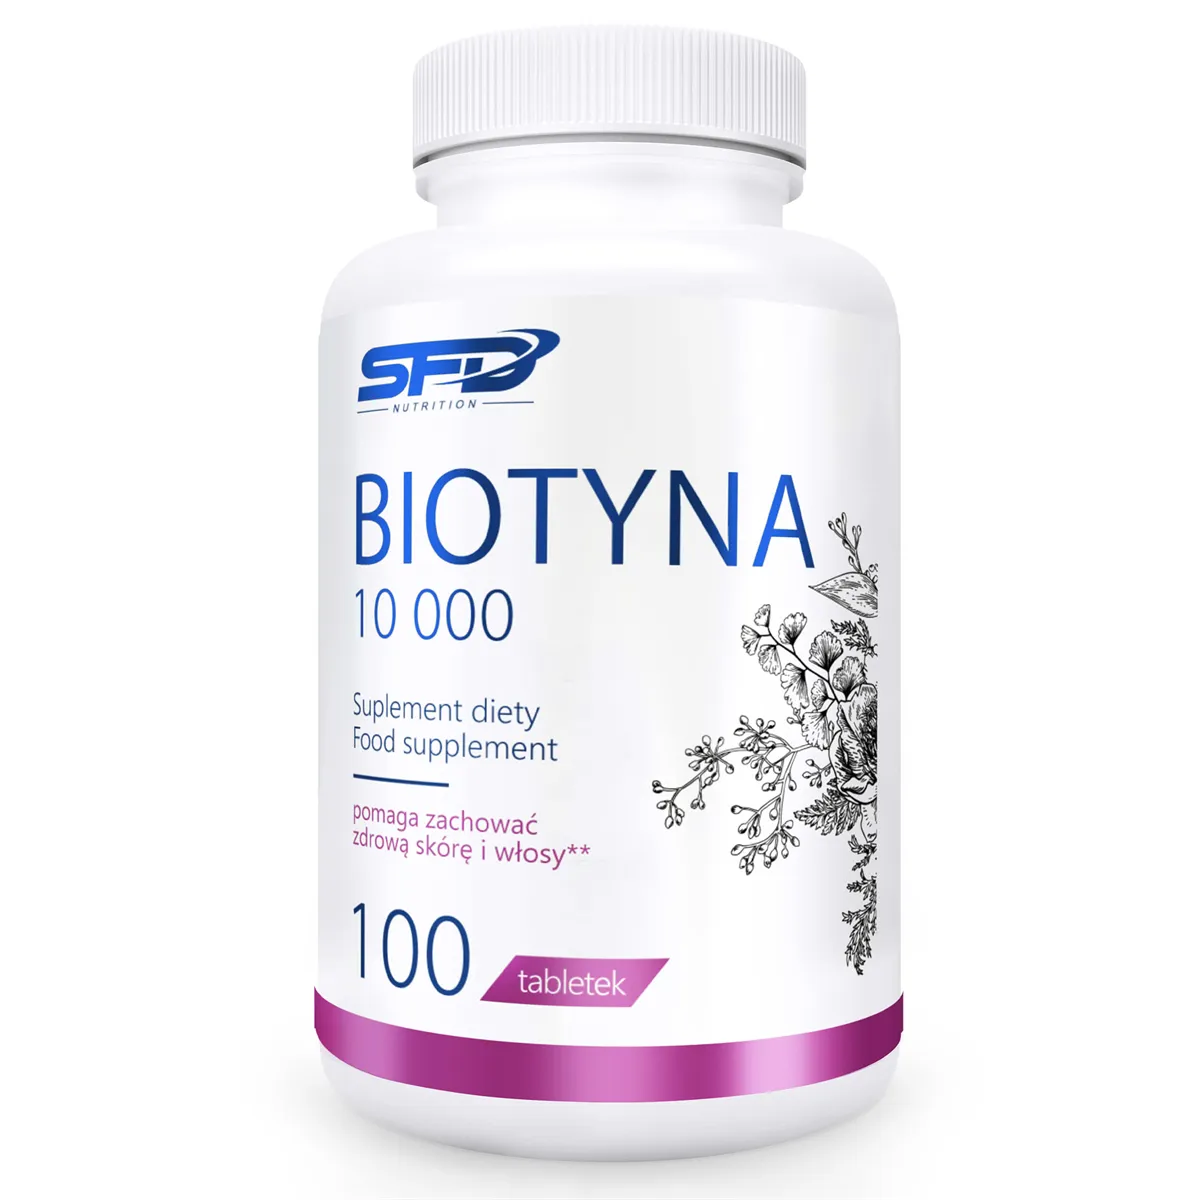 SFD Biotyna 10 000, suplement diety, 100 tabletek